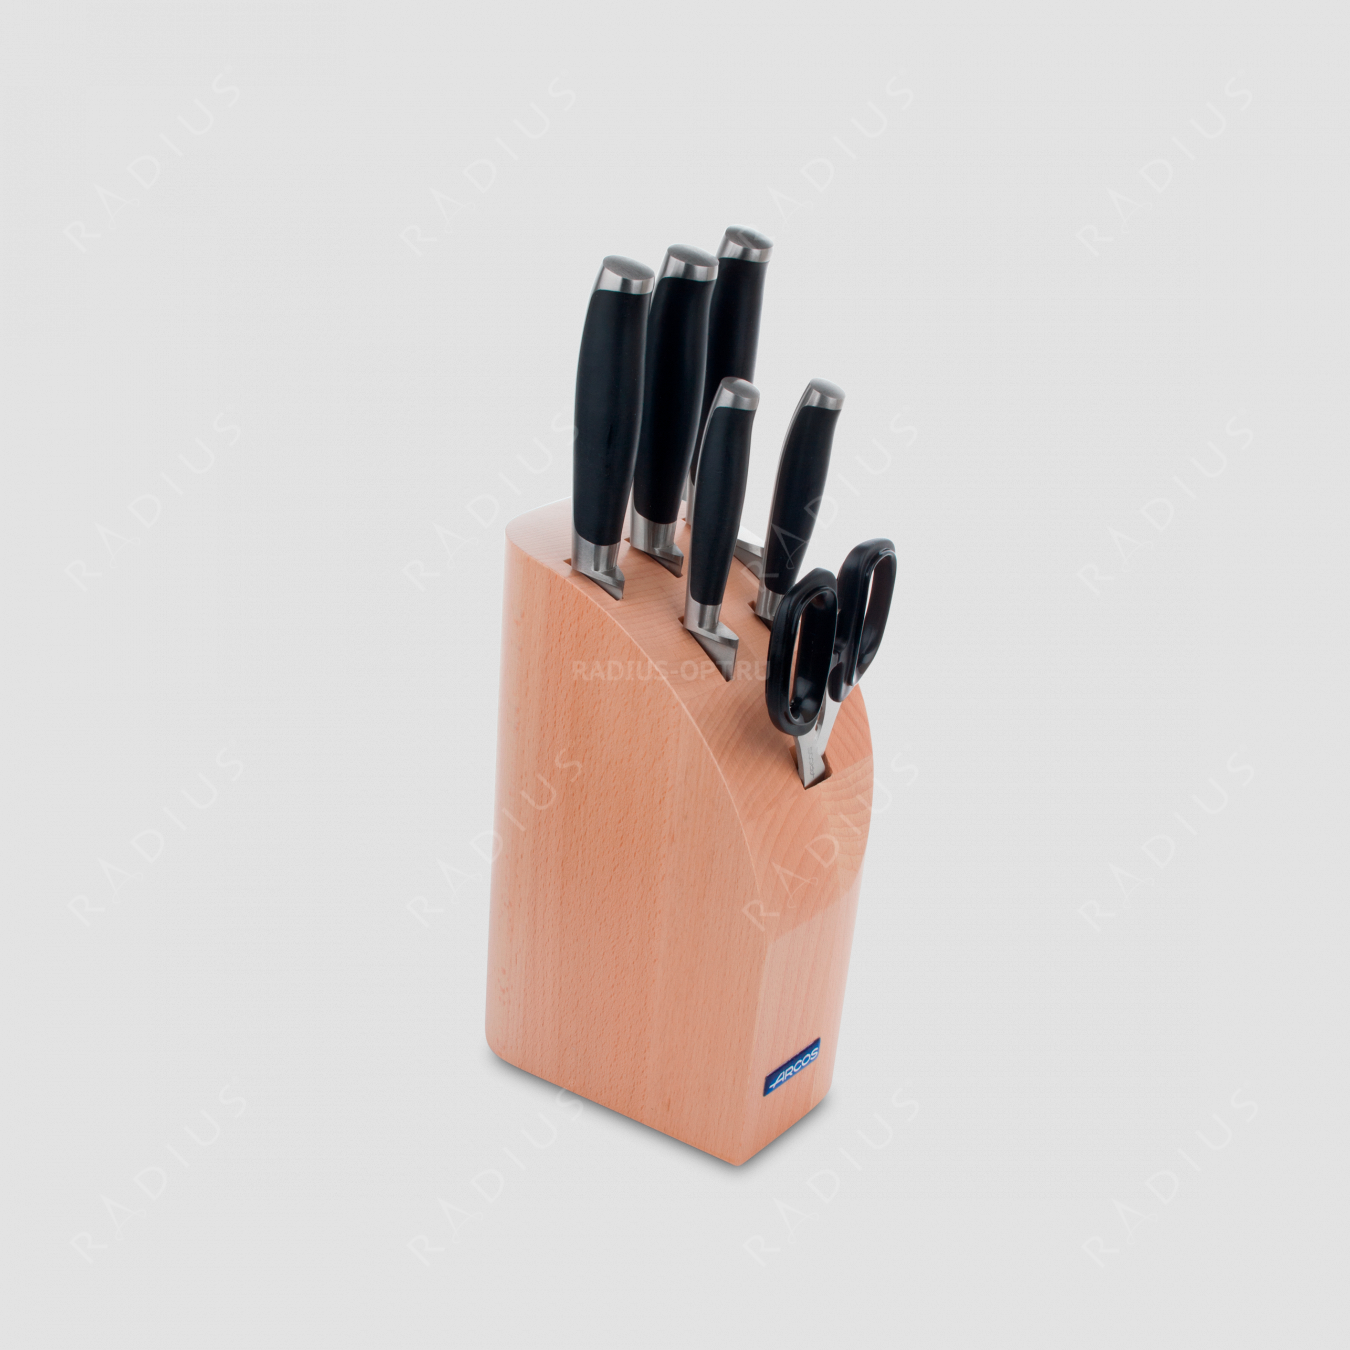 Набор кухонных ножей 5 штук + ножницы в подставке, серия KYOTO, ARCOS, Испания